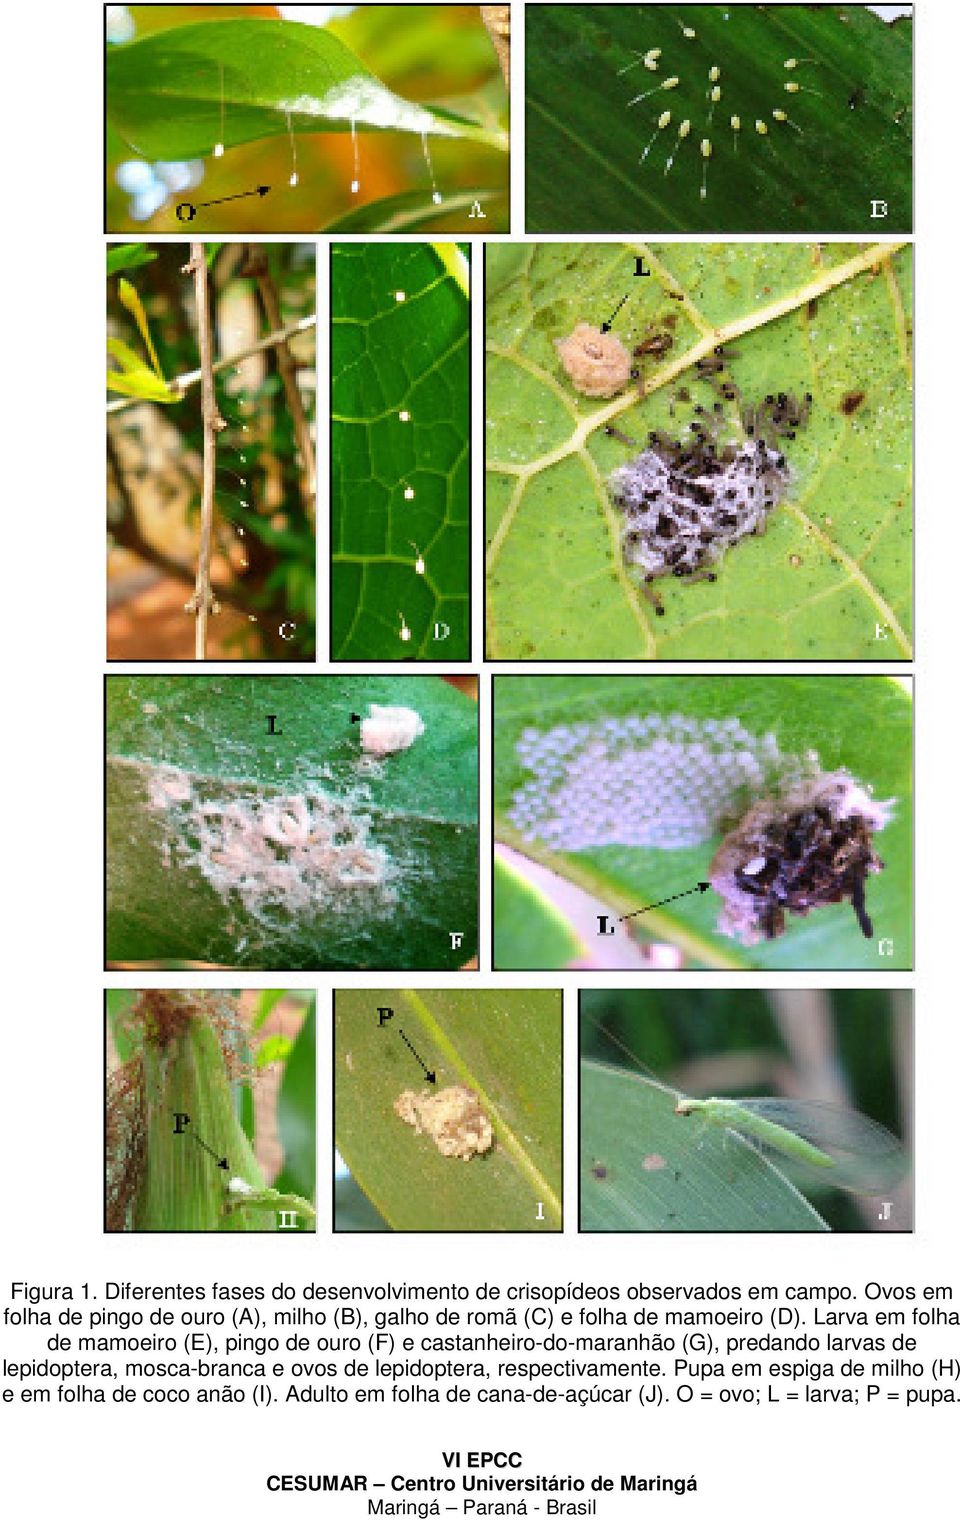 Larva em folha de mamoeiro (E), pingo de ouro (F) e castanheiro-do-maranhão (G), predando larvas de lepidoptera,